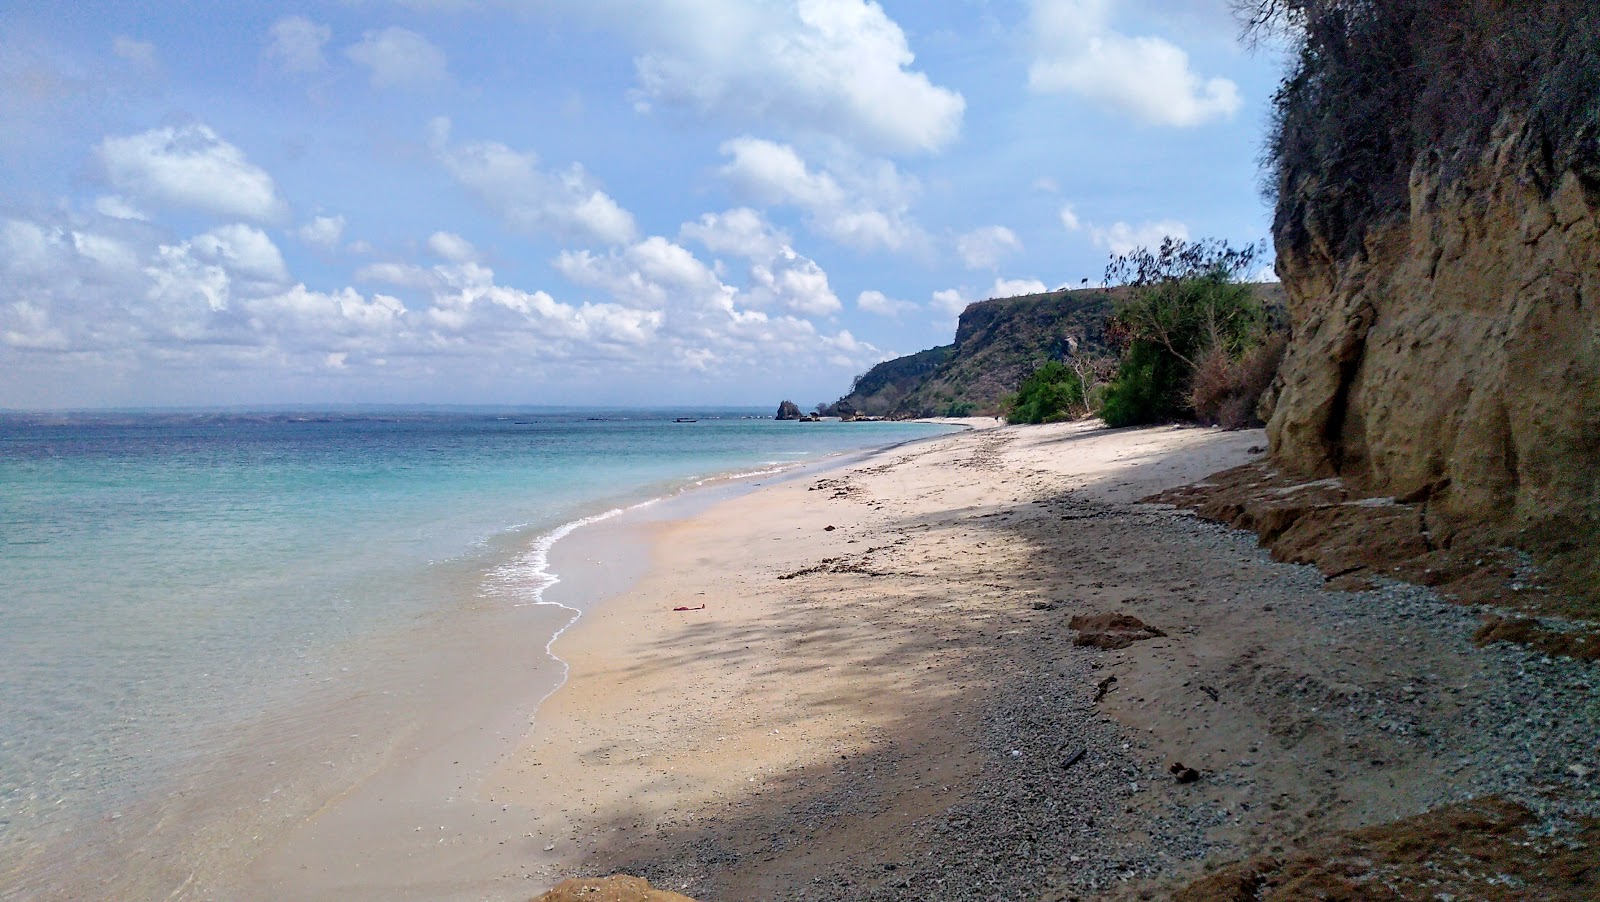 Batu Jamur Beach'in fotoğrafı parlak kum yüzey ile